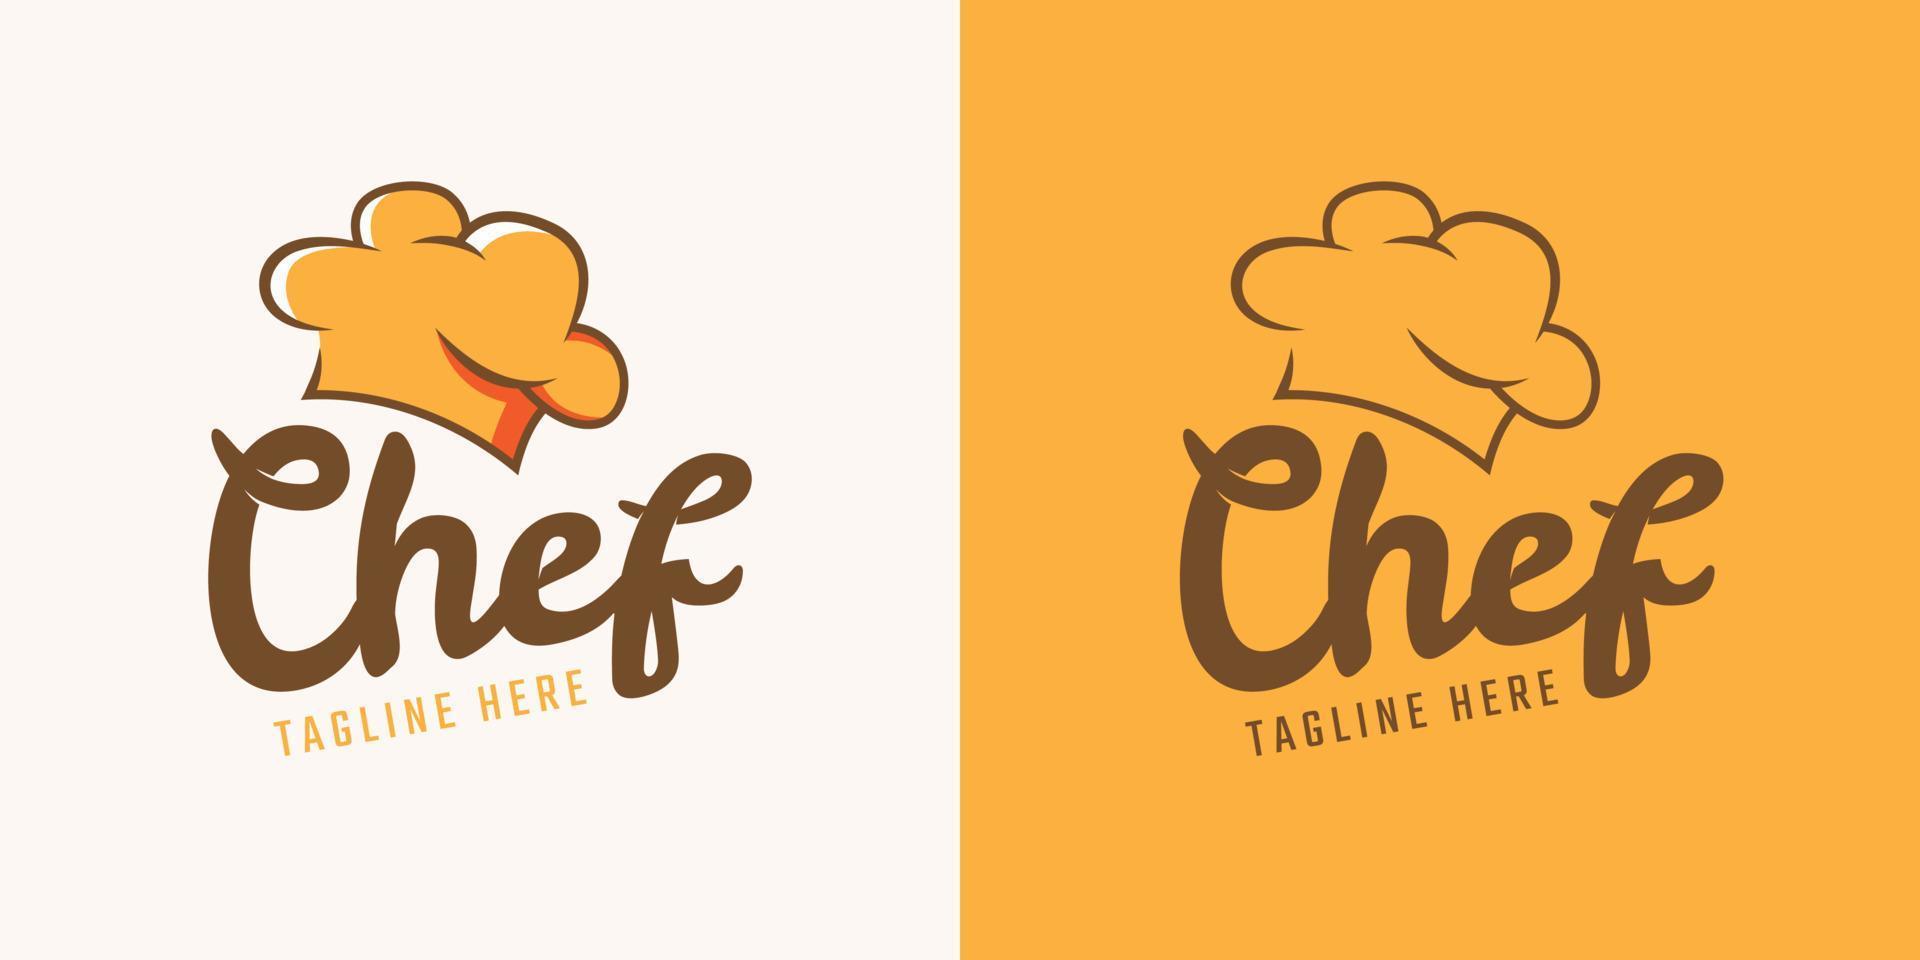 Chef-Logo-Design-Vorlage vektor